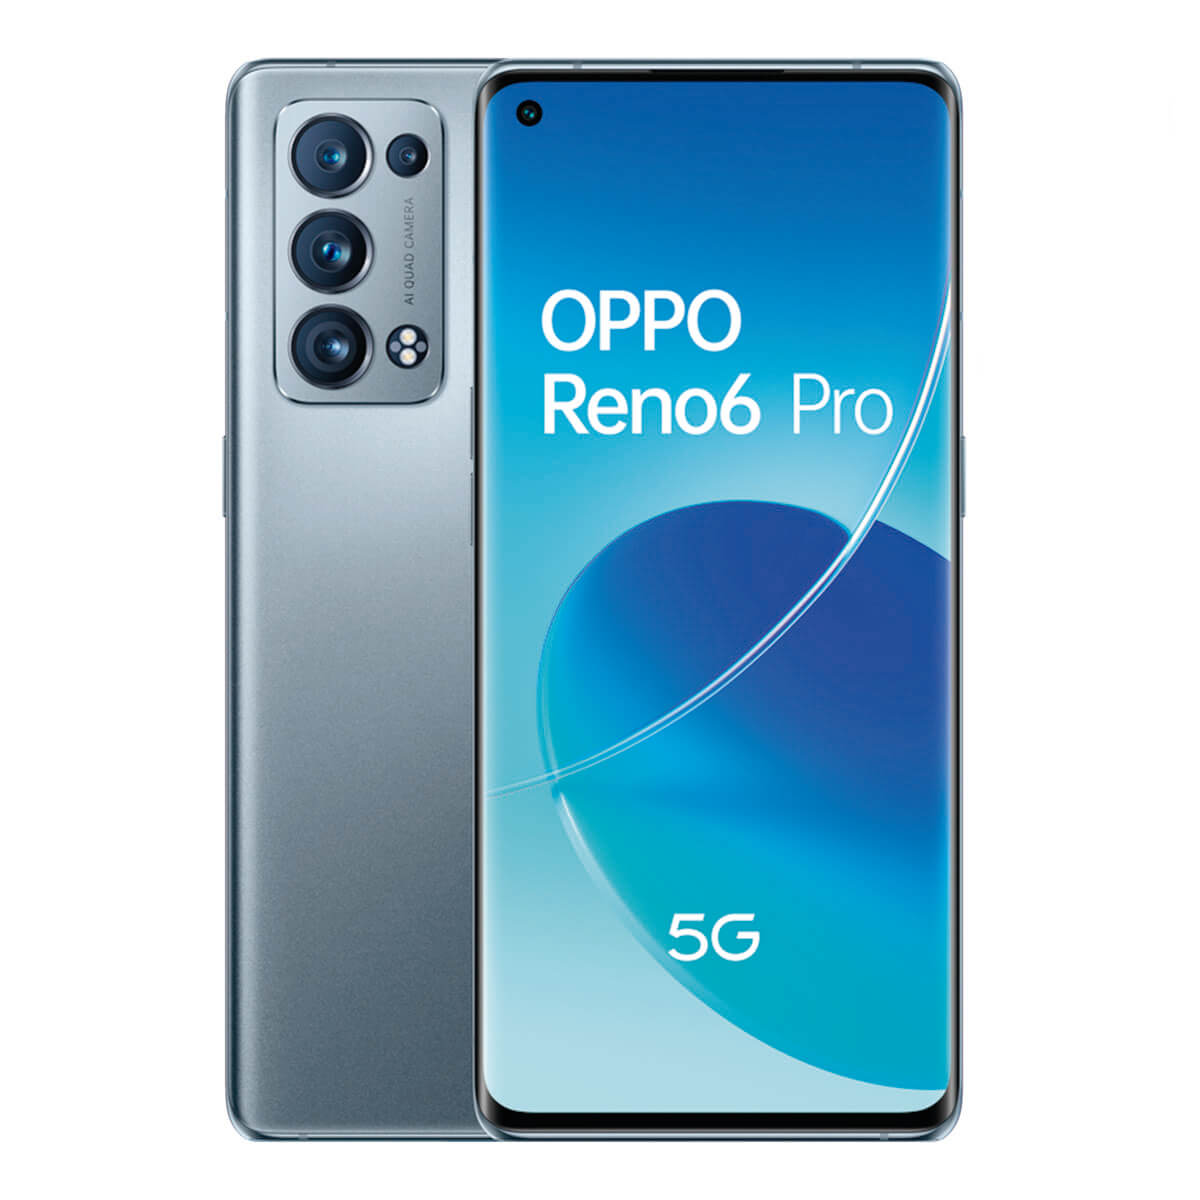 OPPO RENO6 PRO 5G 12GB/256GB GRIS (LUNAR GREY) DUAL SIM CPH2247 | Móviles libres